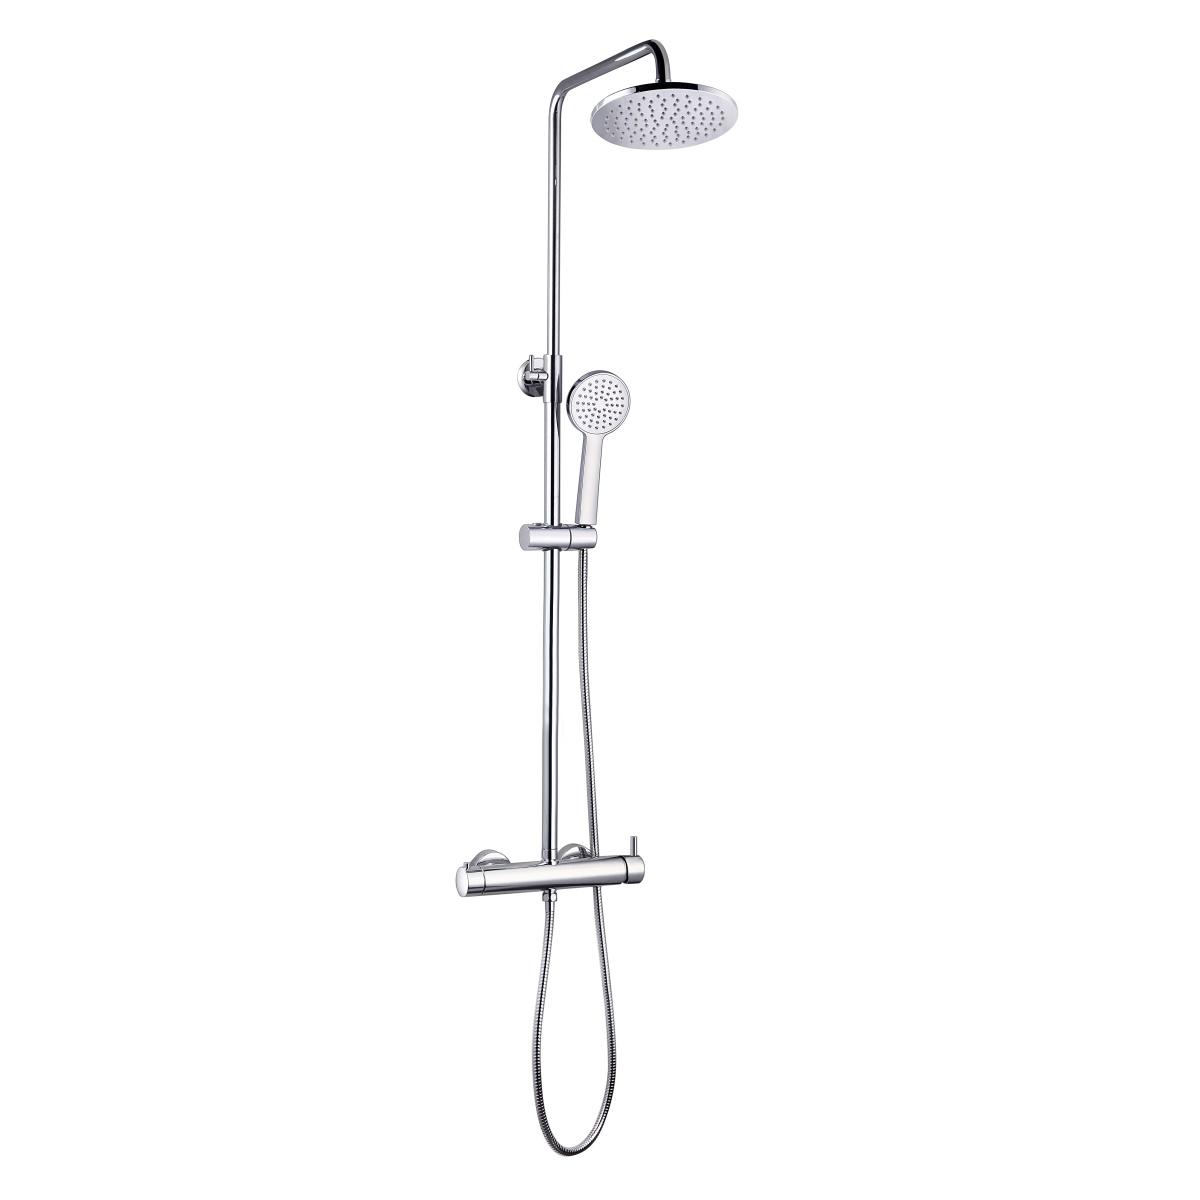 YS34184 Colonna doccia, colonna doccia a pioggia con rubinetto doccia, regolabile in altezza;